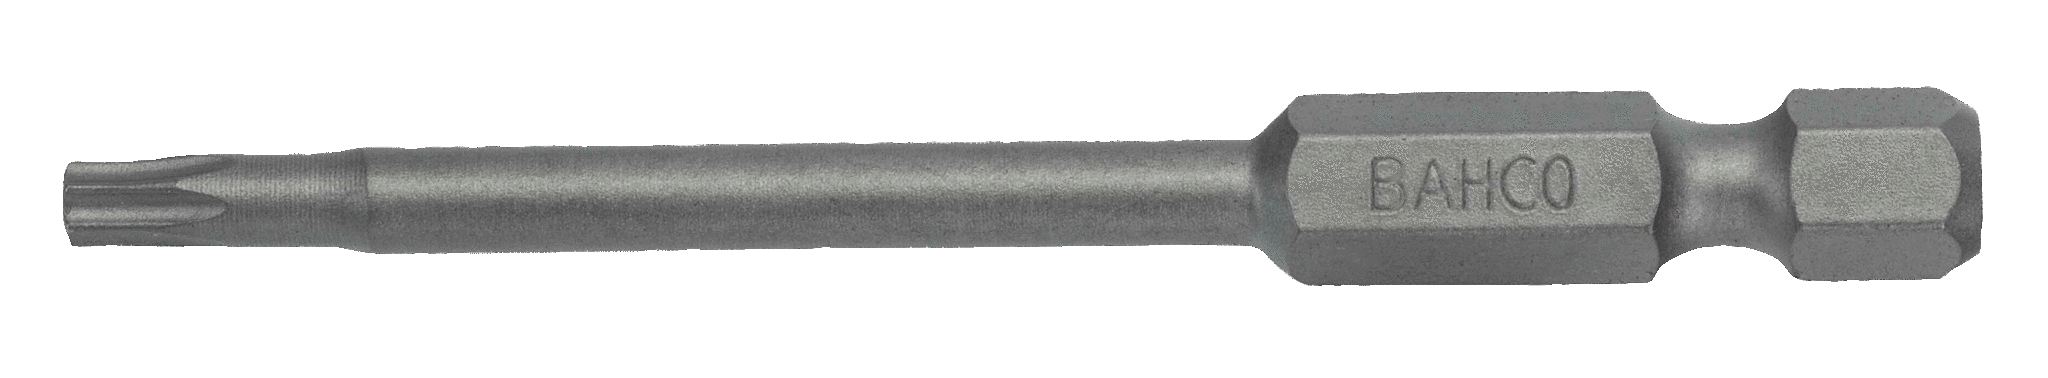 картинка Стандартные биты для отверток Torx® TR, 70 мм BAHCO 59S/70TR25-2P от магазина "Элит-инструмент"